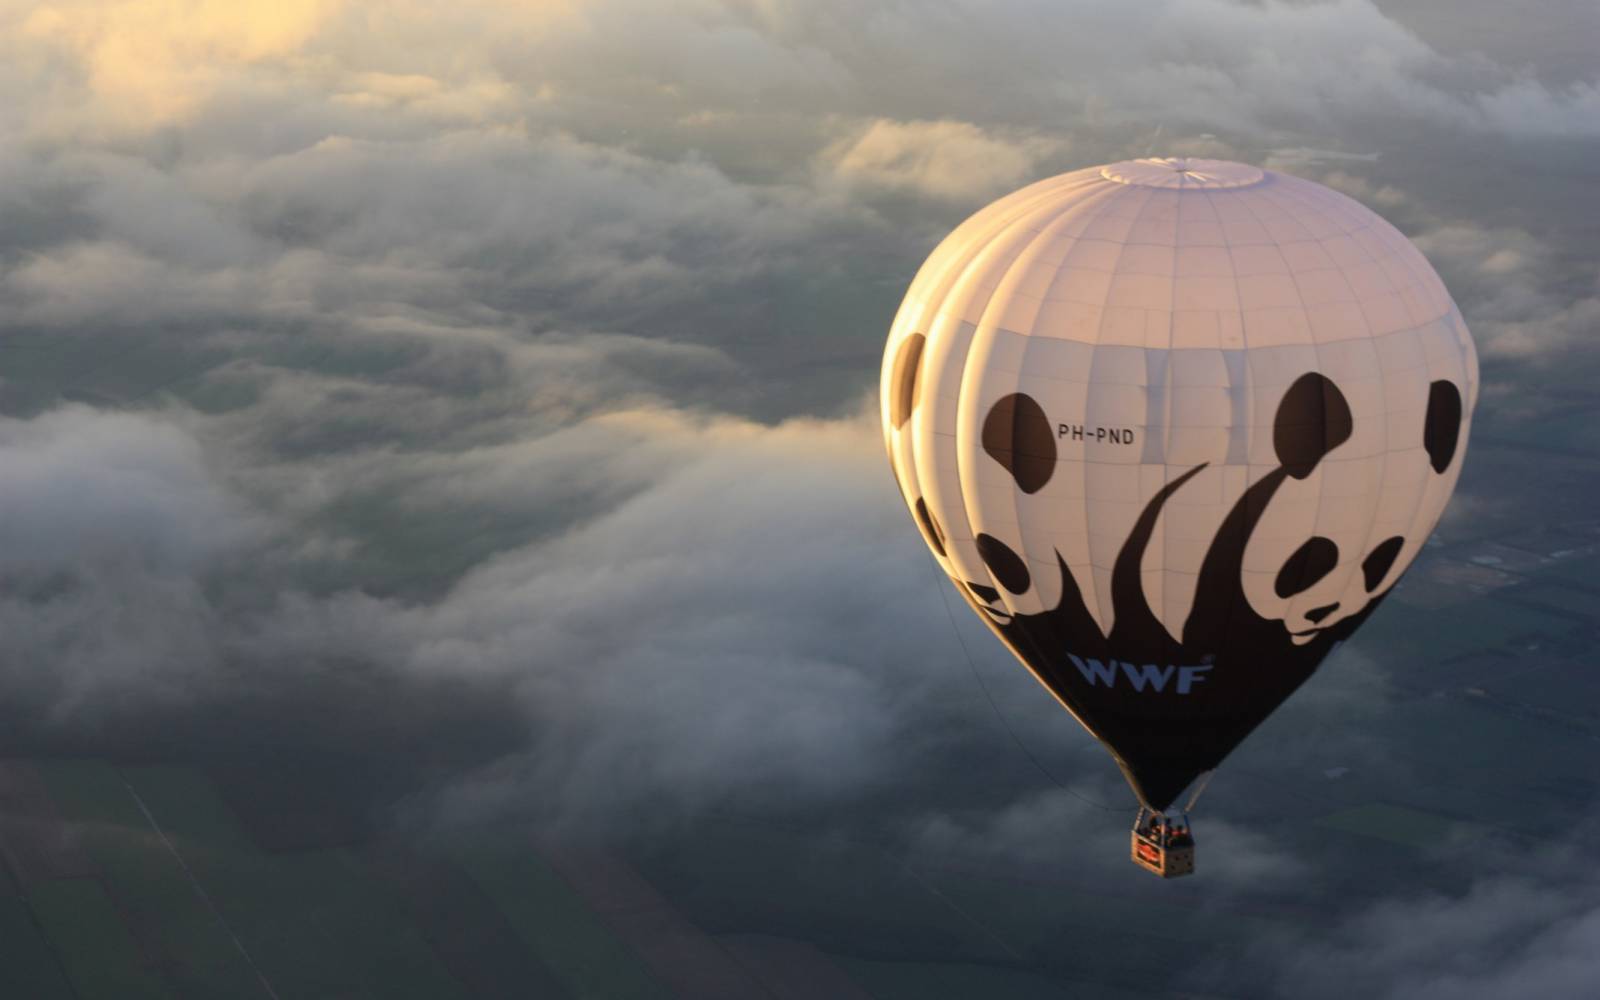 WWF Ballon in der Luft